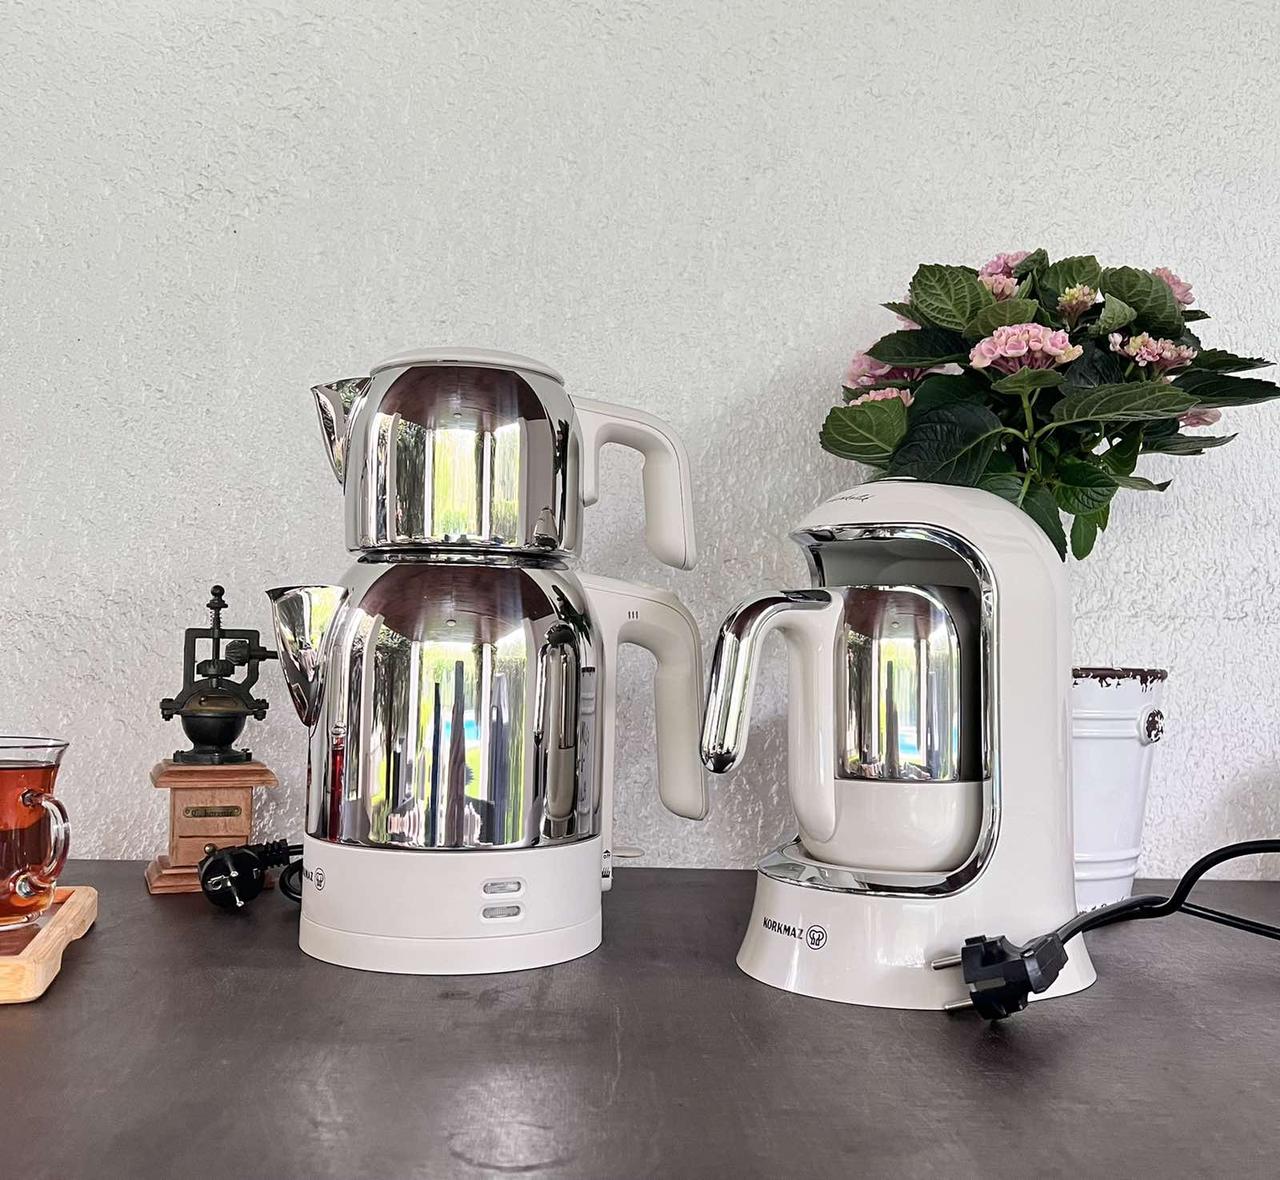 Набір електричний чайник Korkmaz A359-09 Vanilla Teapot — Cream і електрична кавоварка Korkmaz Automatic, фото 1